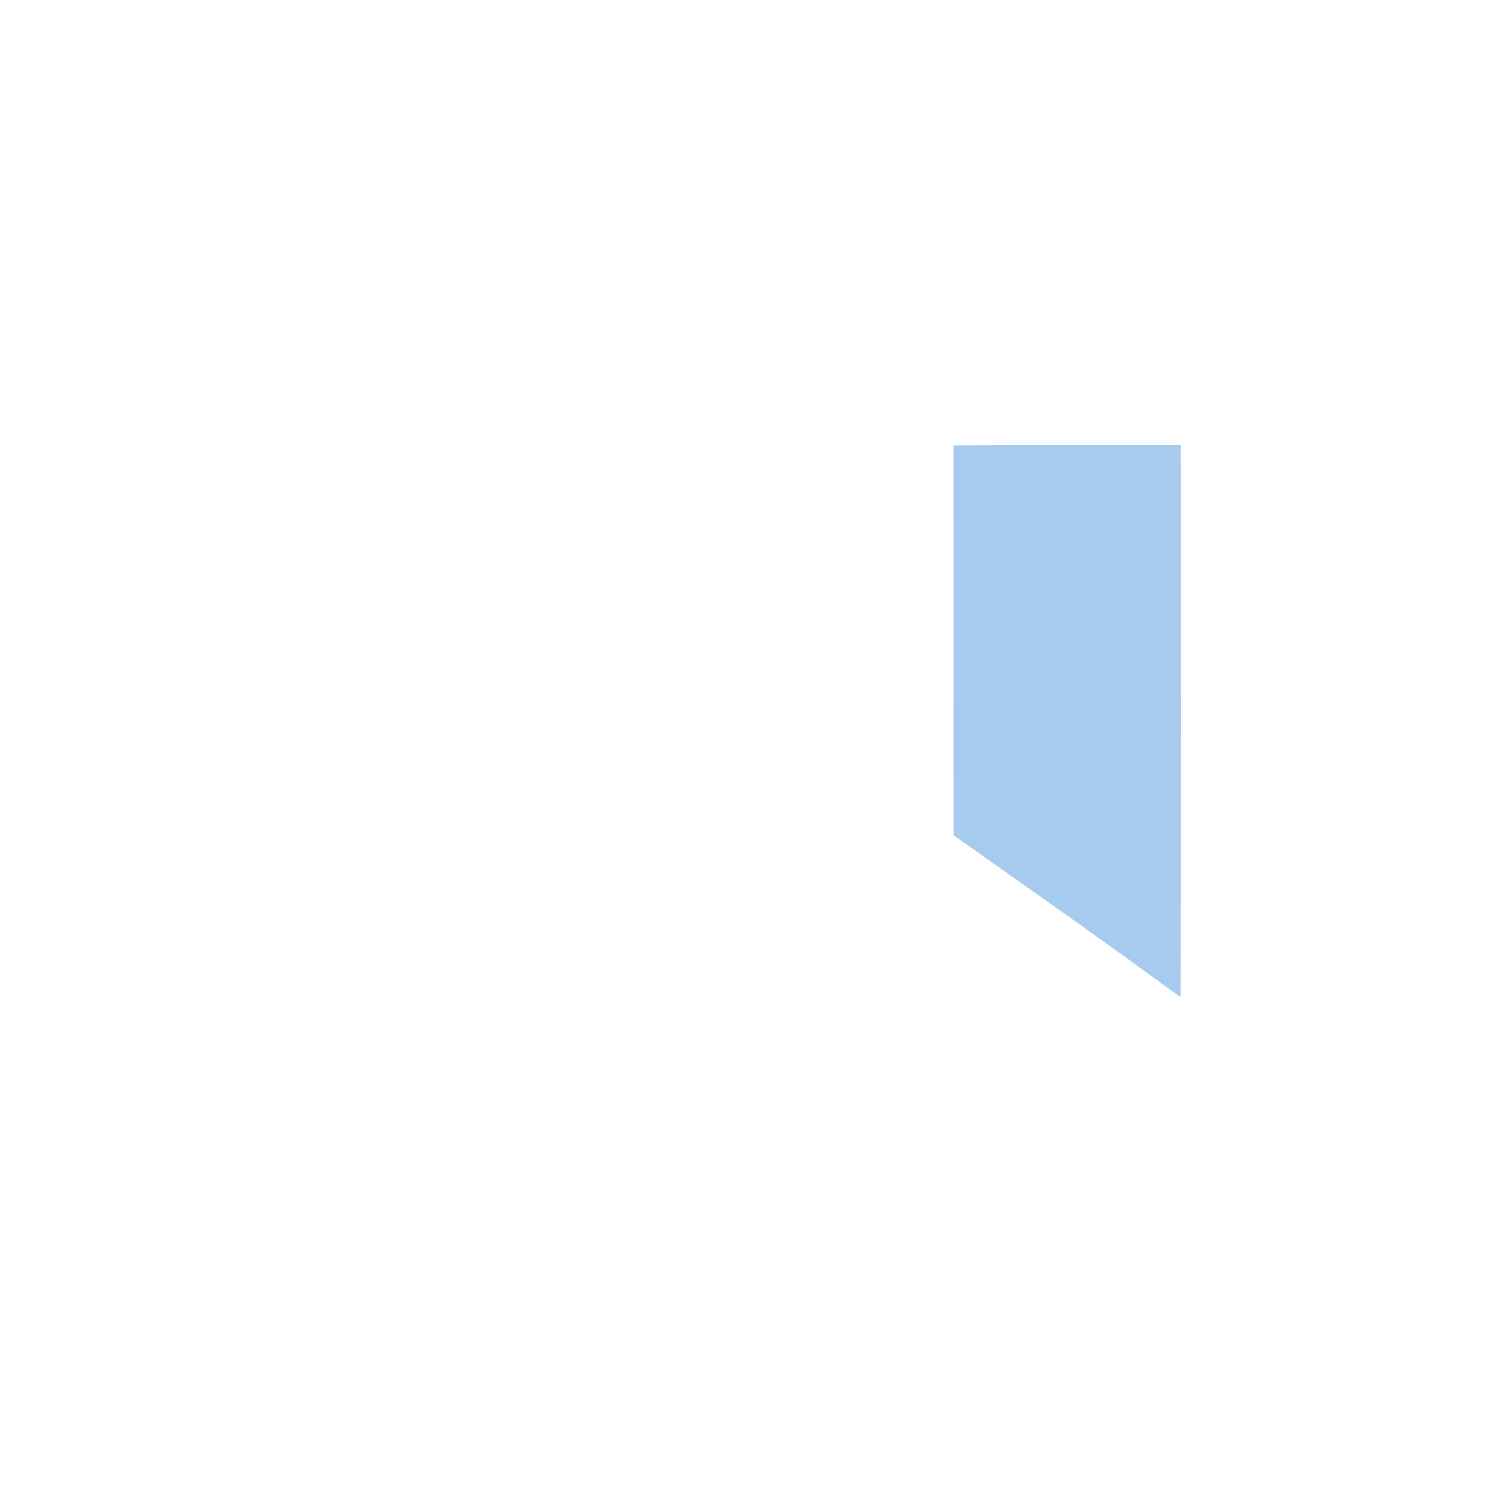 Granite Real Estate logo for dark backgrounds (transparent PNG)